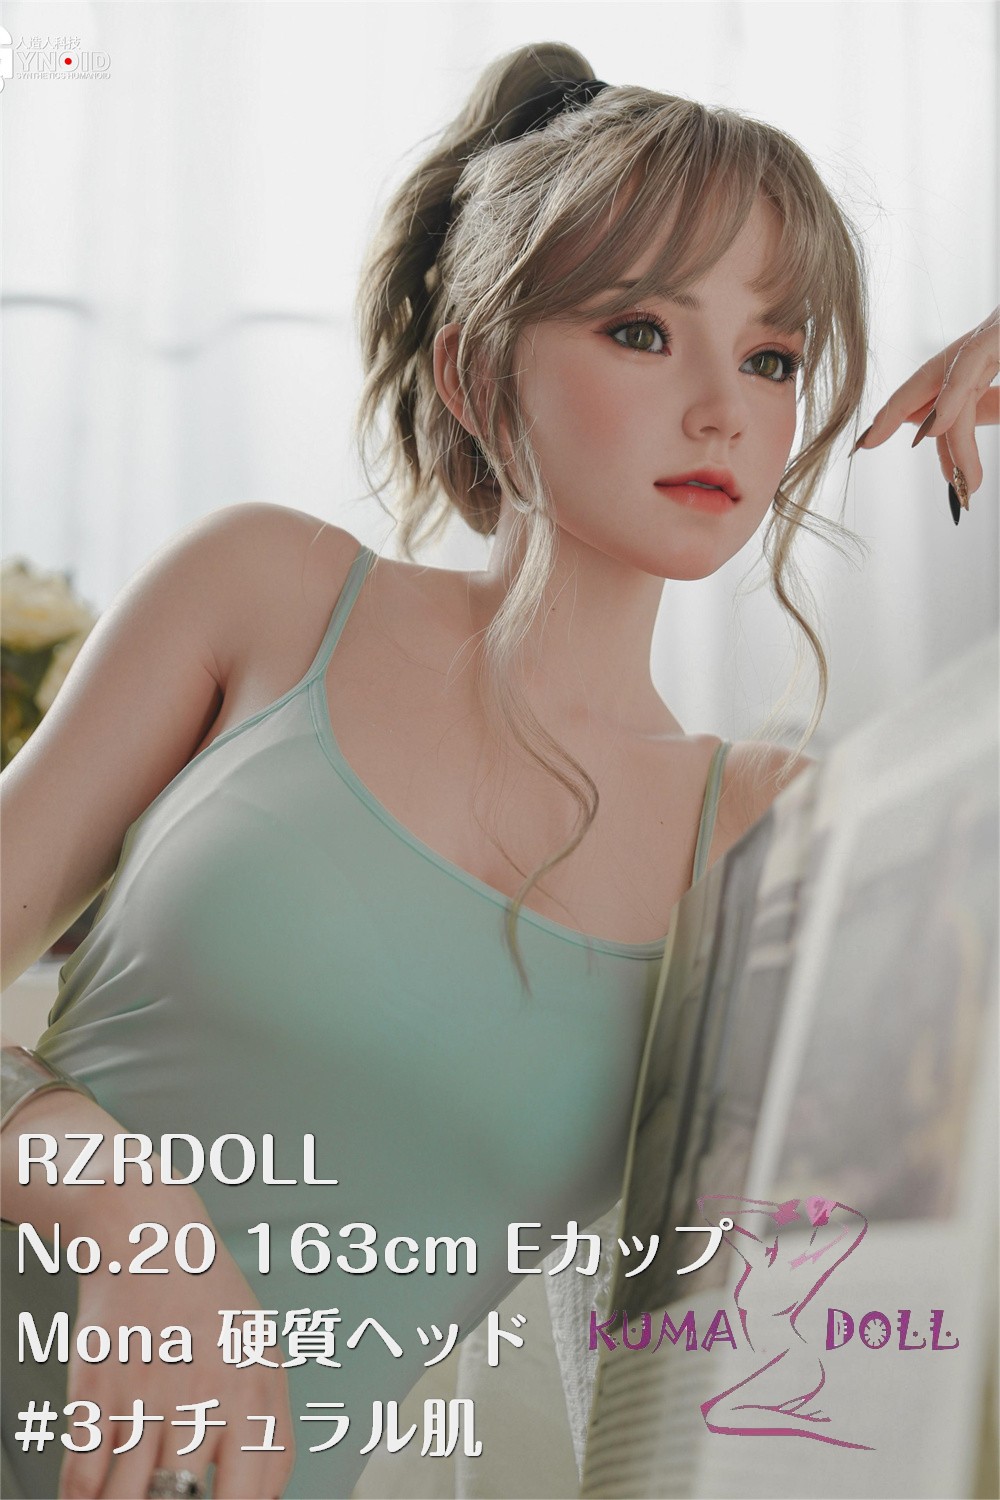 RZR Doll フルシリコン製ラブドール No.20 163cm Eカップ Delux-究極版 Mona ヘッド「R」シリーズ